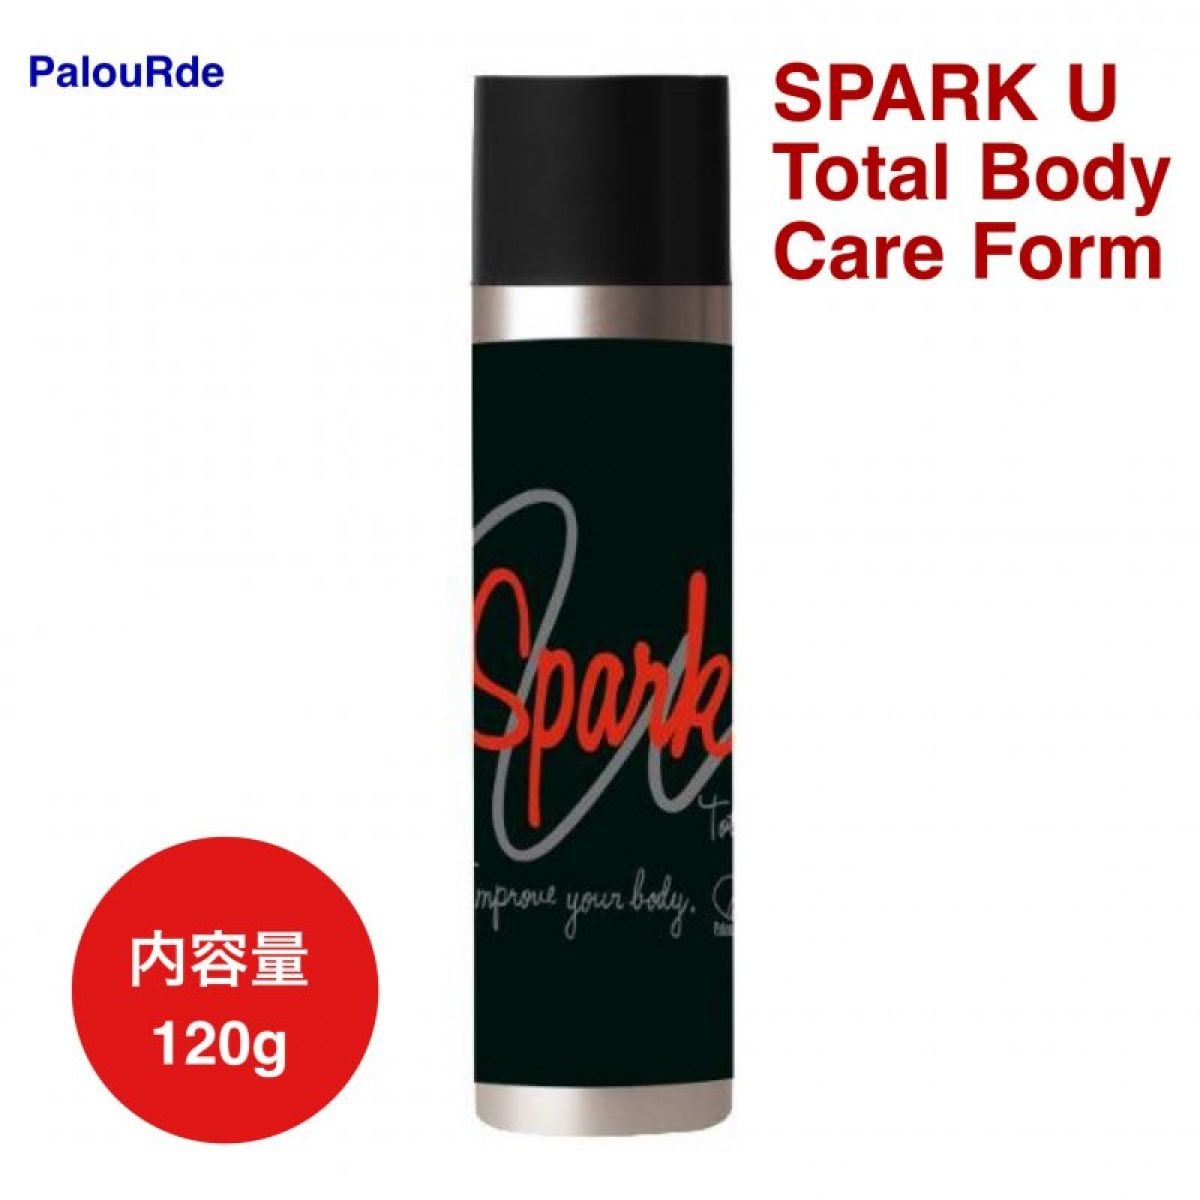 【ボディケアフォーム/120g】SPARK U Total Body Care Form/肩凝り/腰痛/ふくらはぎ/疲れ/PalouRde社